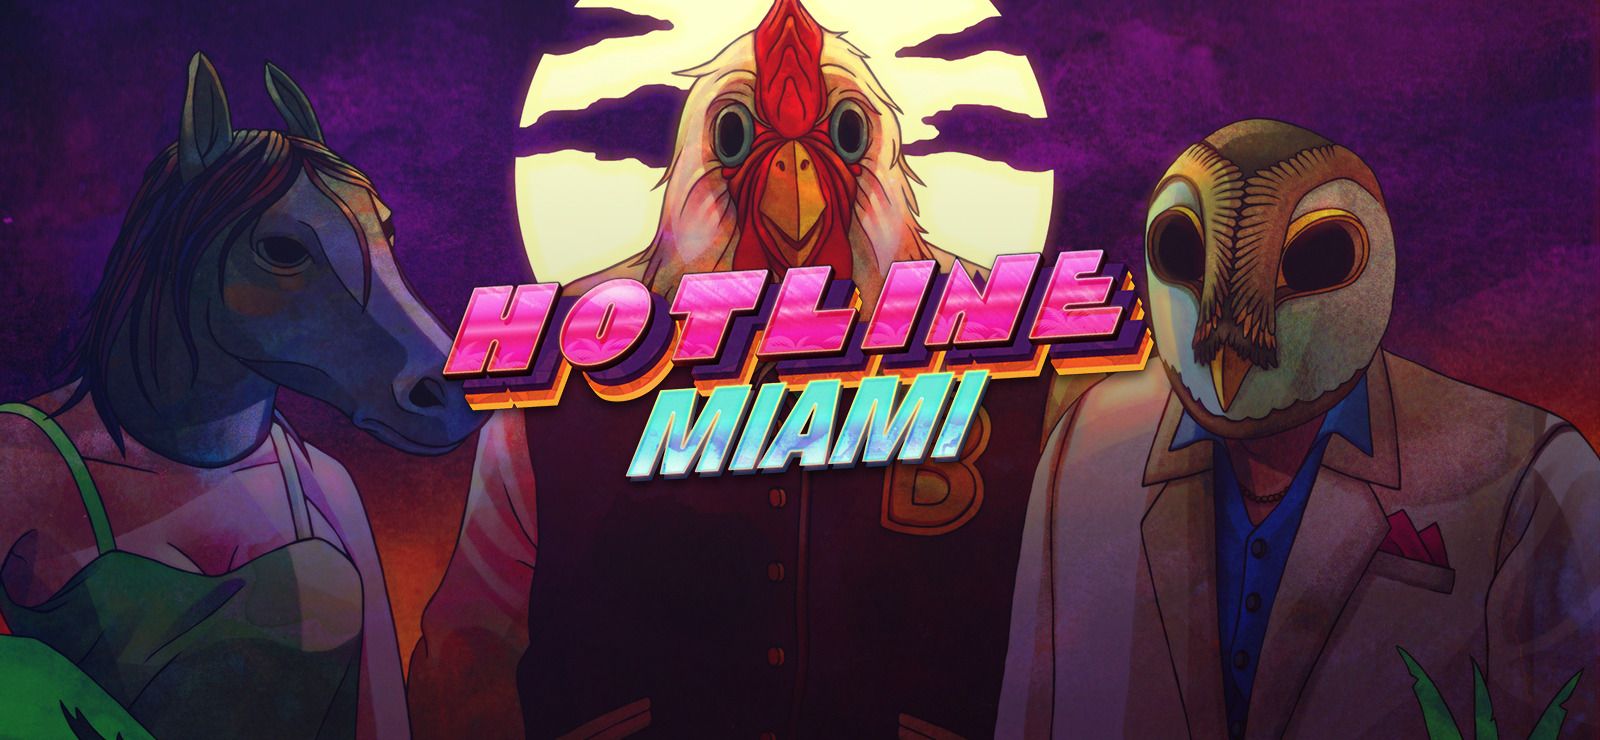 Hotline Miami 1 i 2 došli na novu generaciju konzola